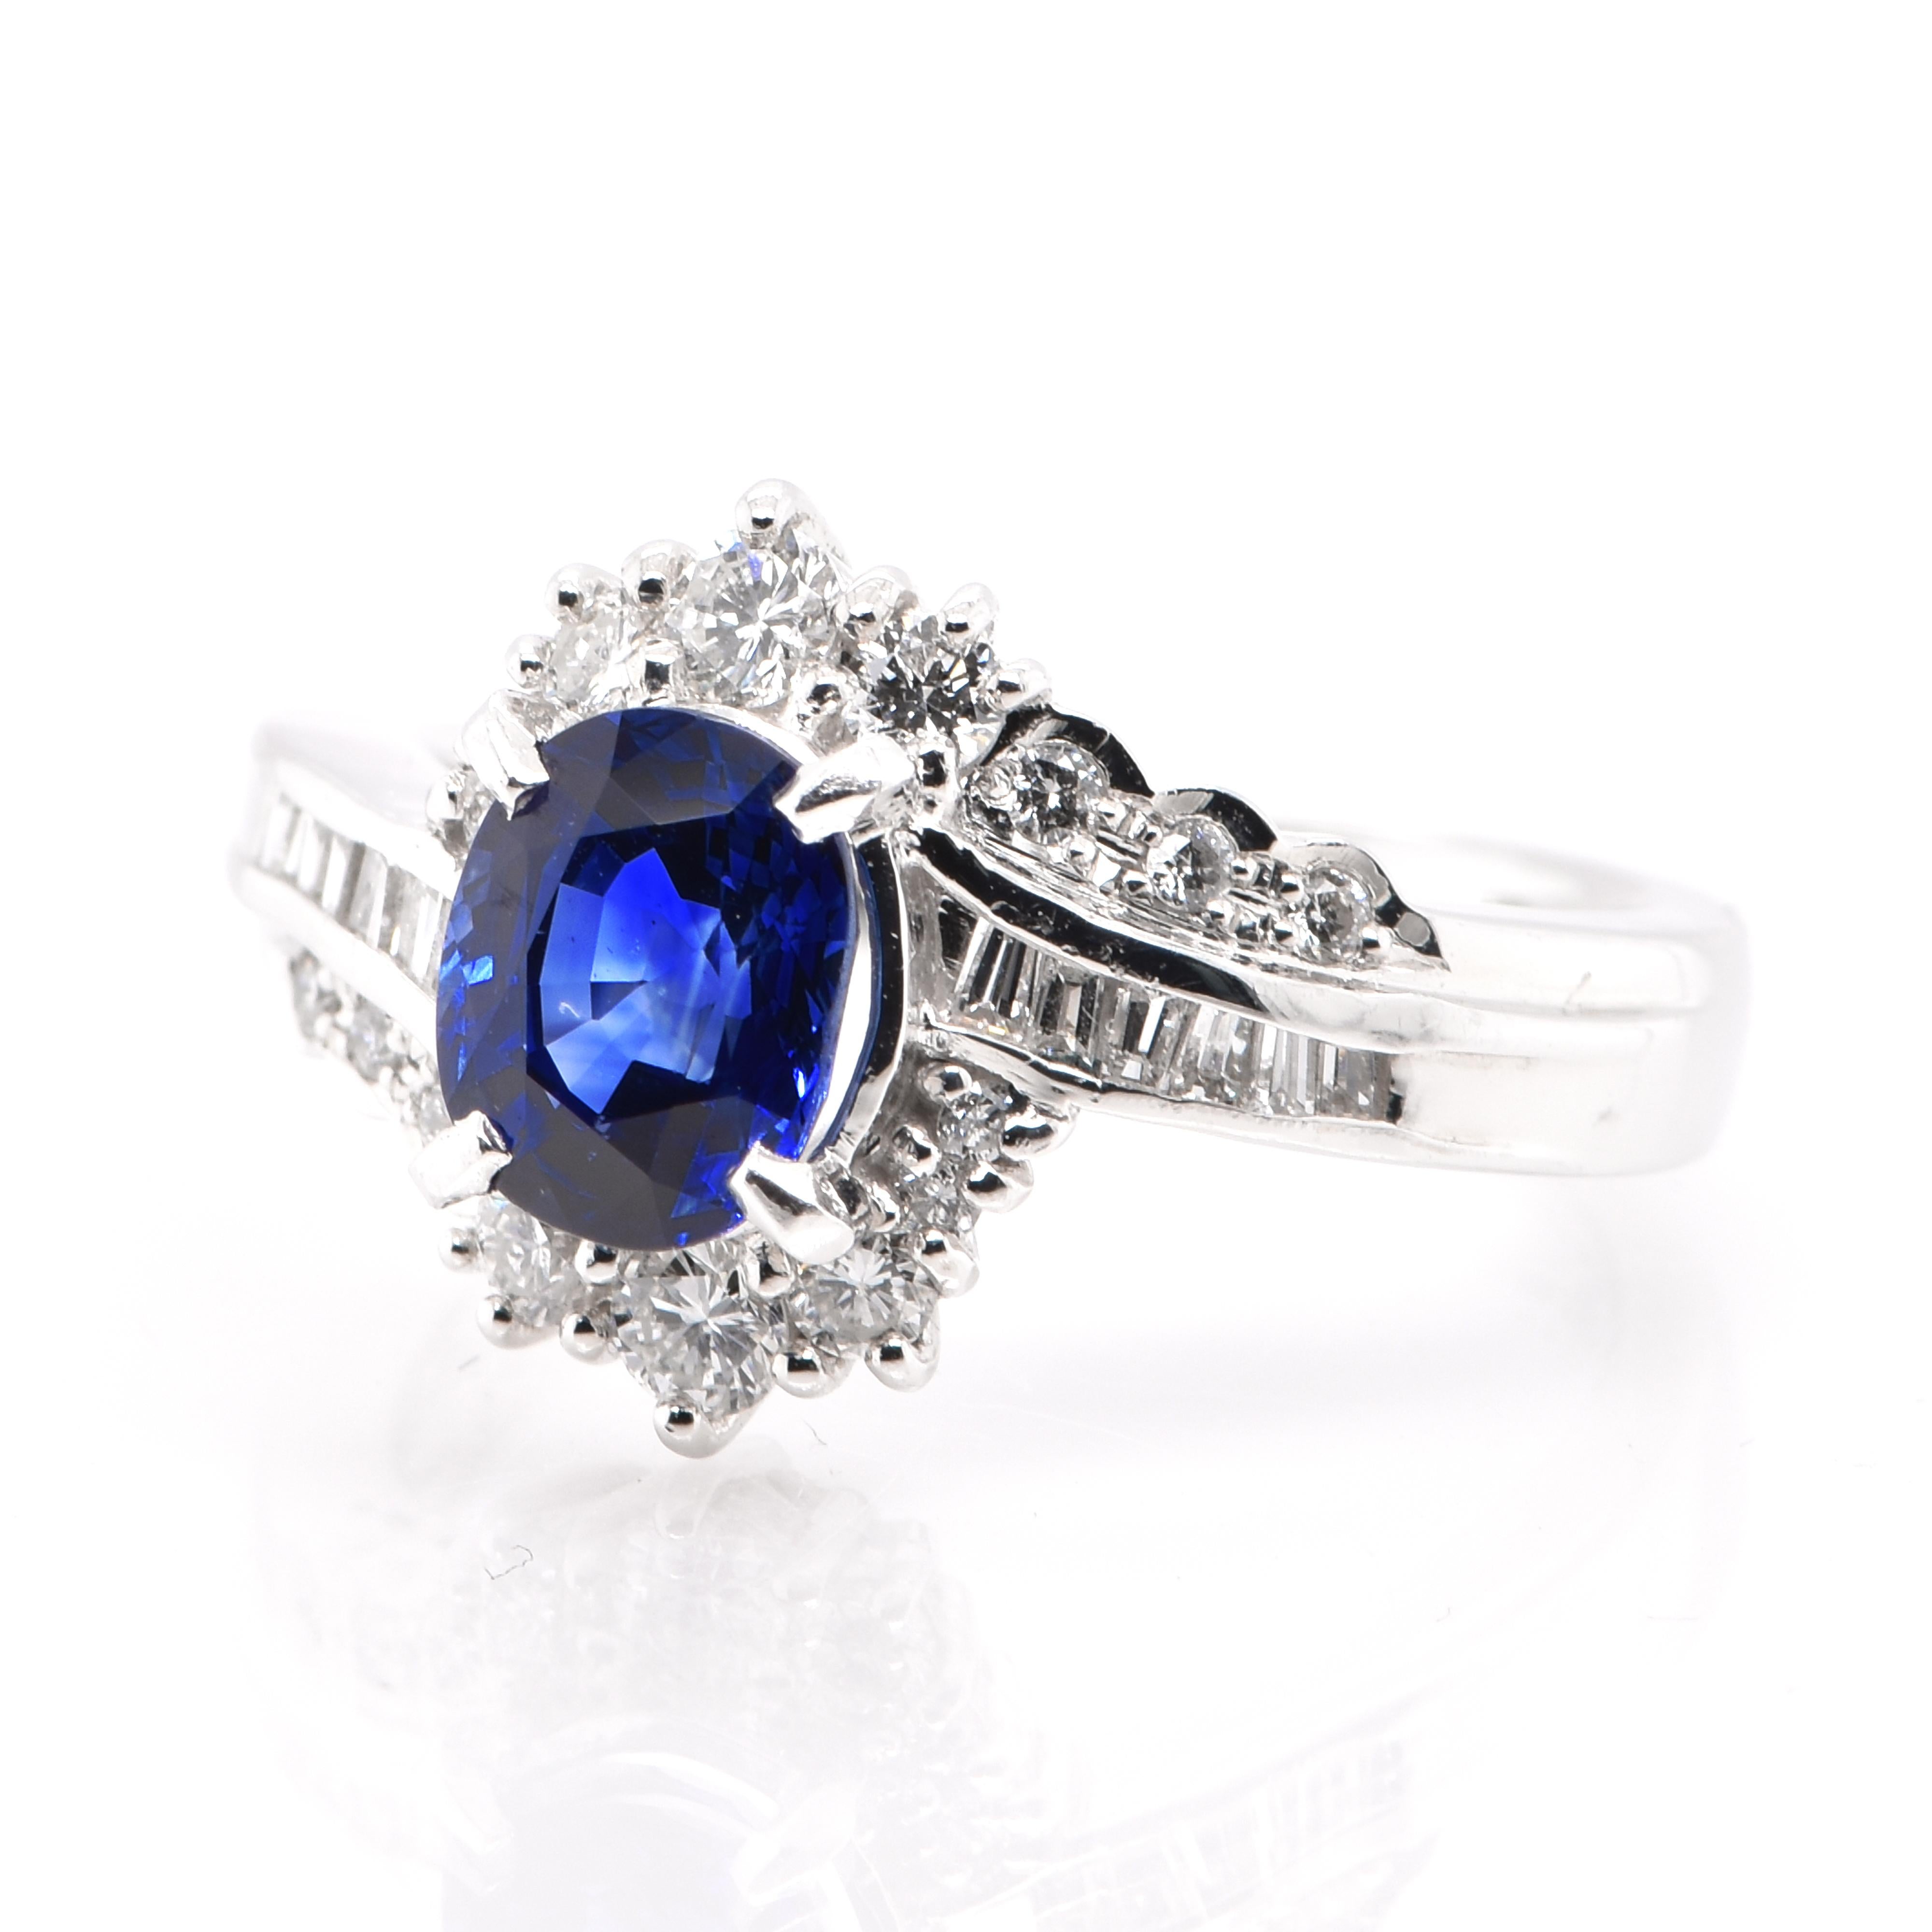 Une magnifique bague présentant un saphir bleu naturel de 1,52 carat et des accents en diamant de 0,56 carat, le tout monté sur du platine. Les saphirs ont une durabilité extraordinaire - ils excellent dans la dureté ainsi que dans la résistance et